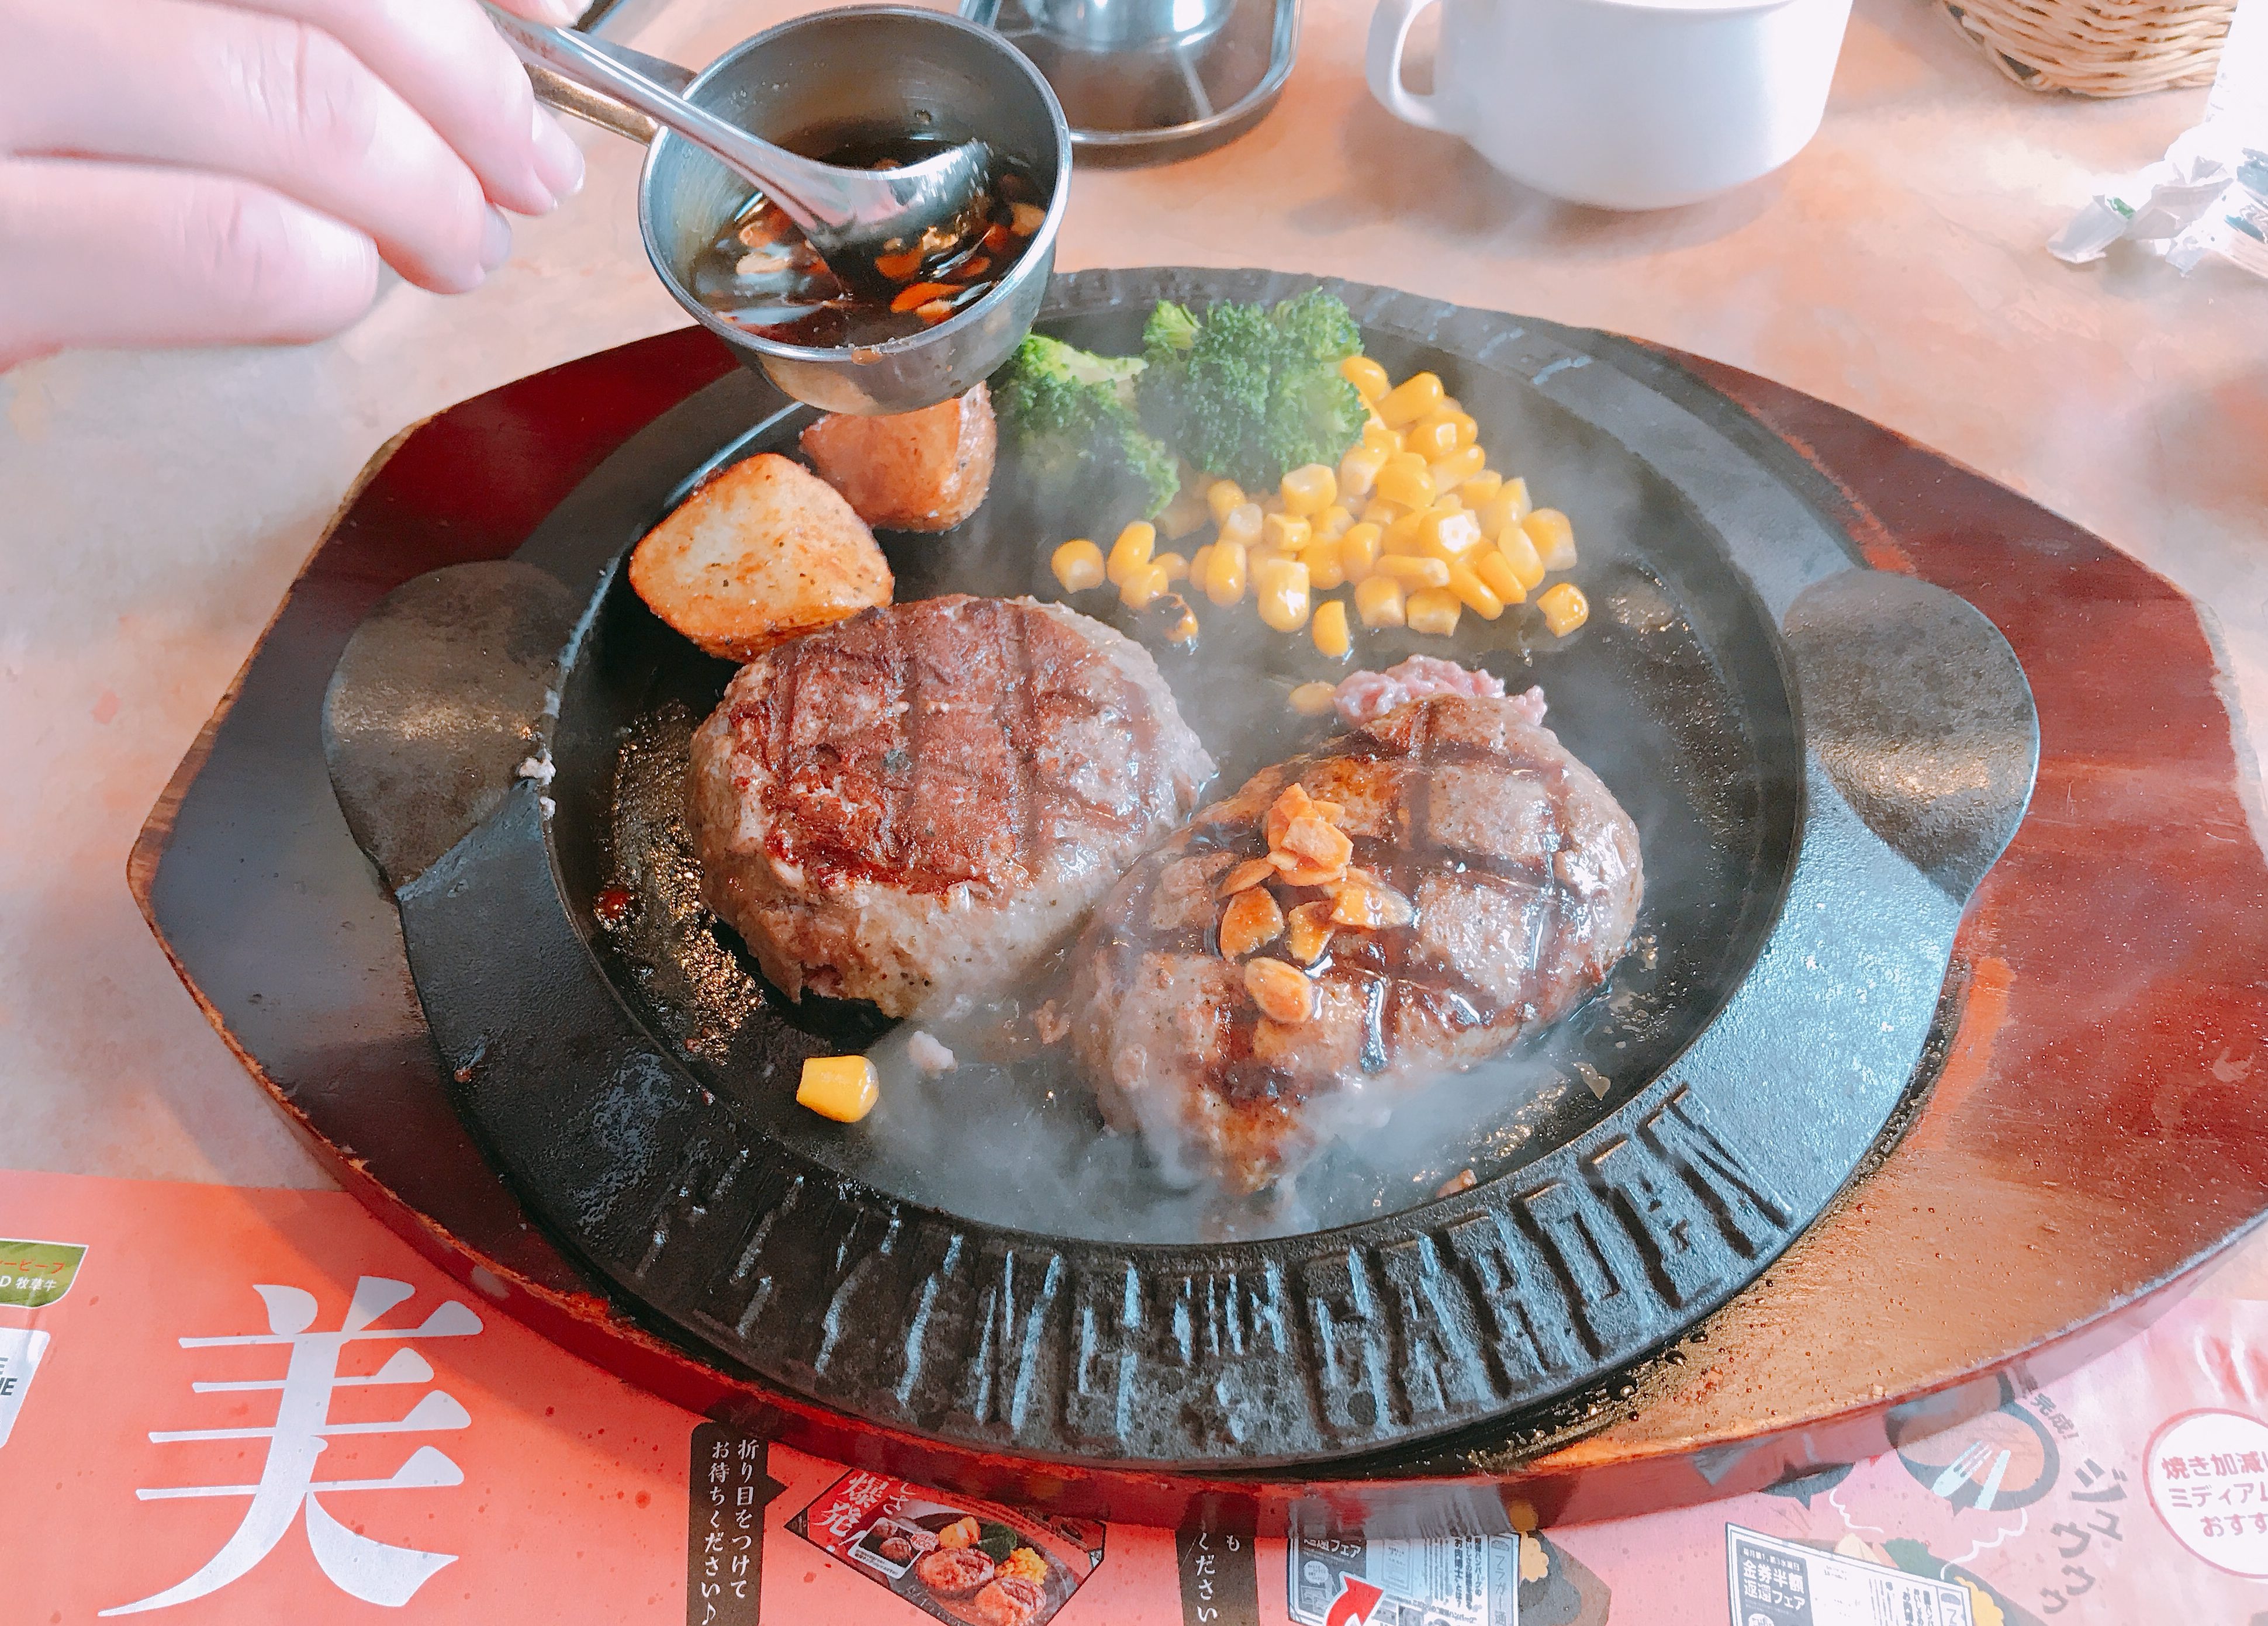 フライングガーデン は関東ローカルのさわやか 名物爆弾ハンバーグを食べてみた 旅する食卓 Table Trip